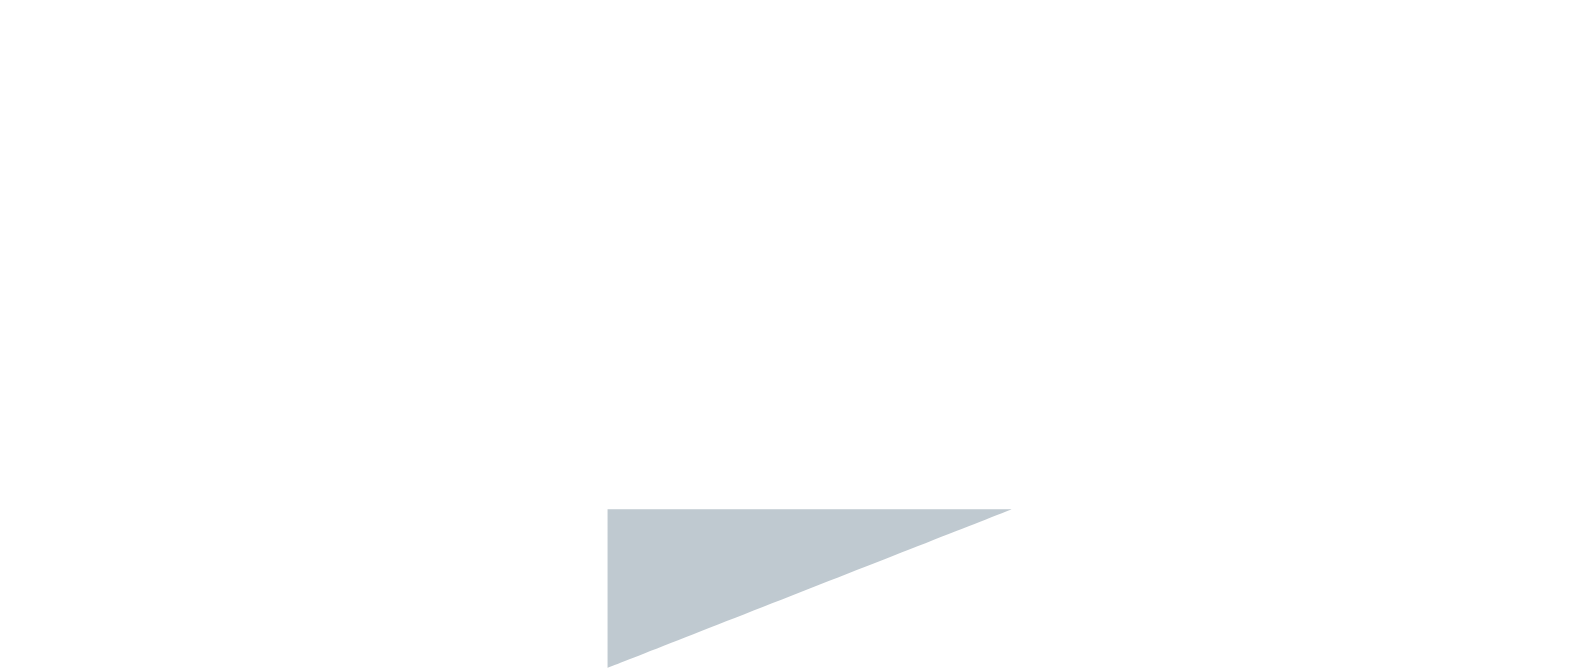 GBL logo pour fonds sombres (PNG transparent)